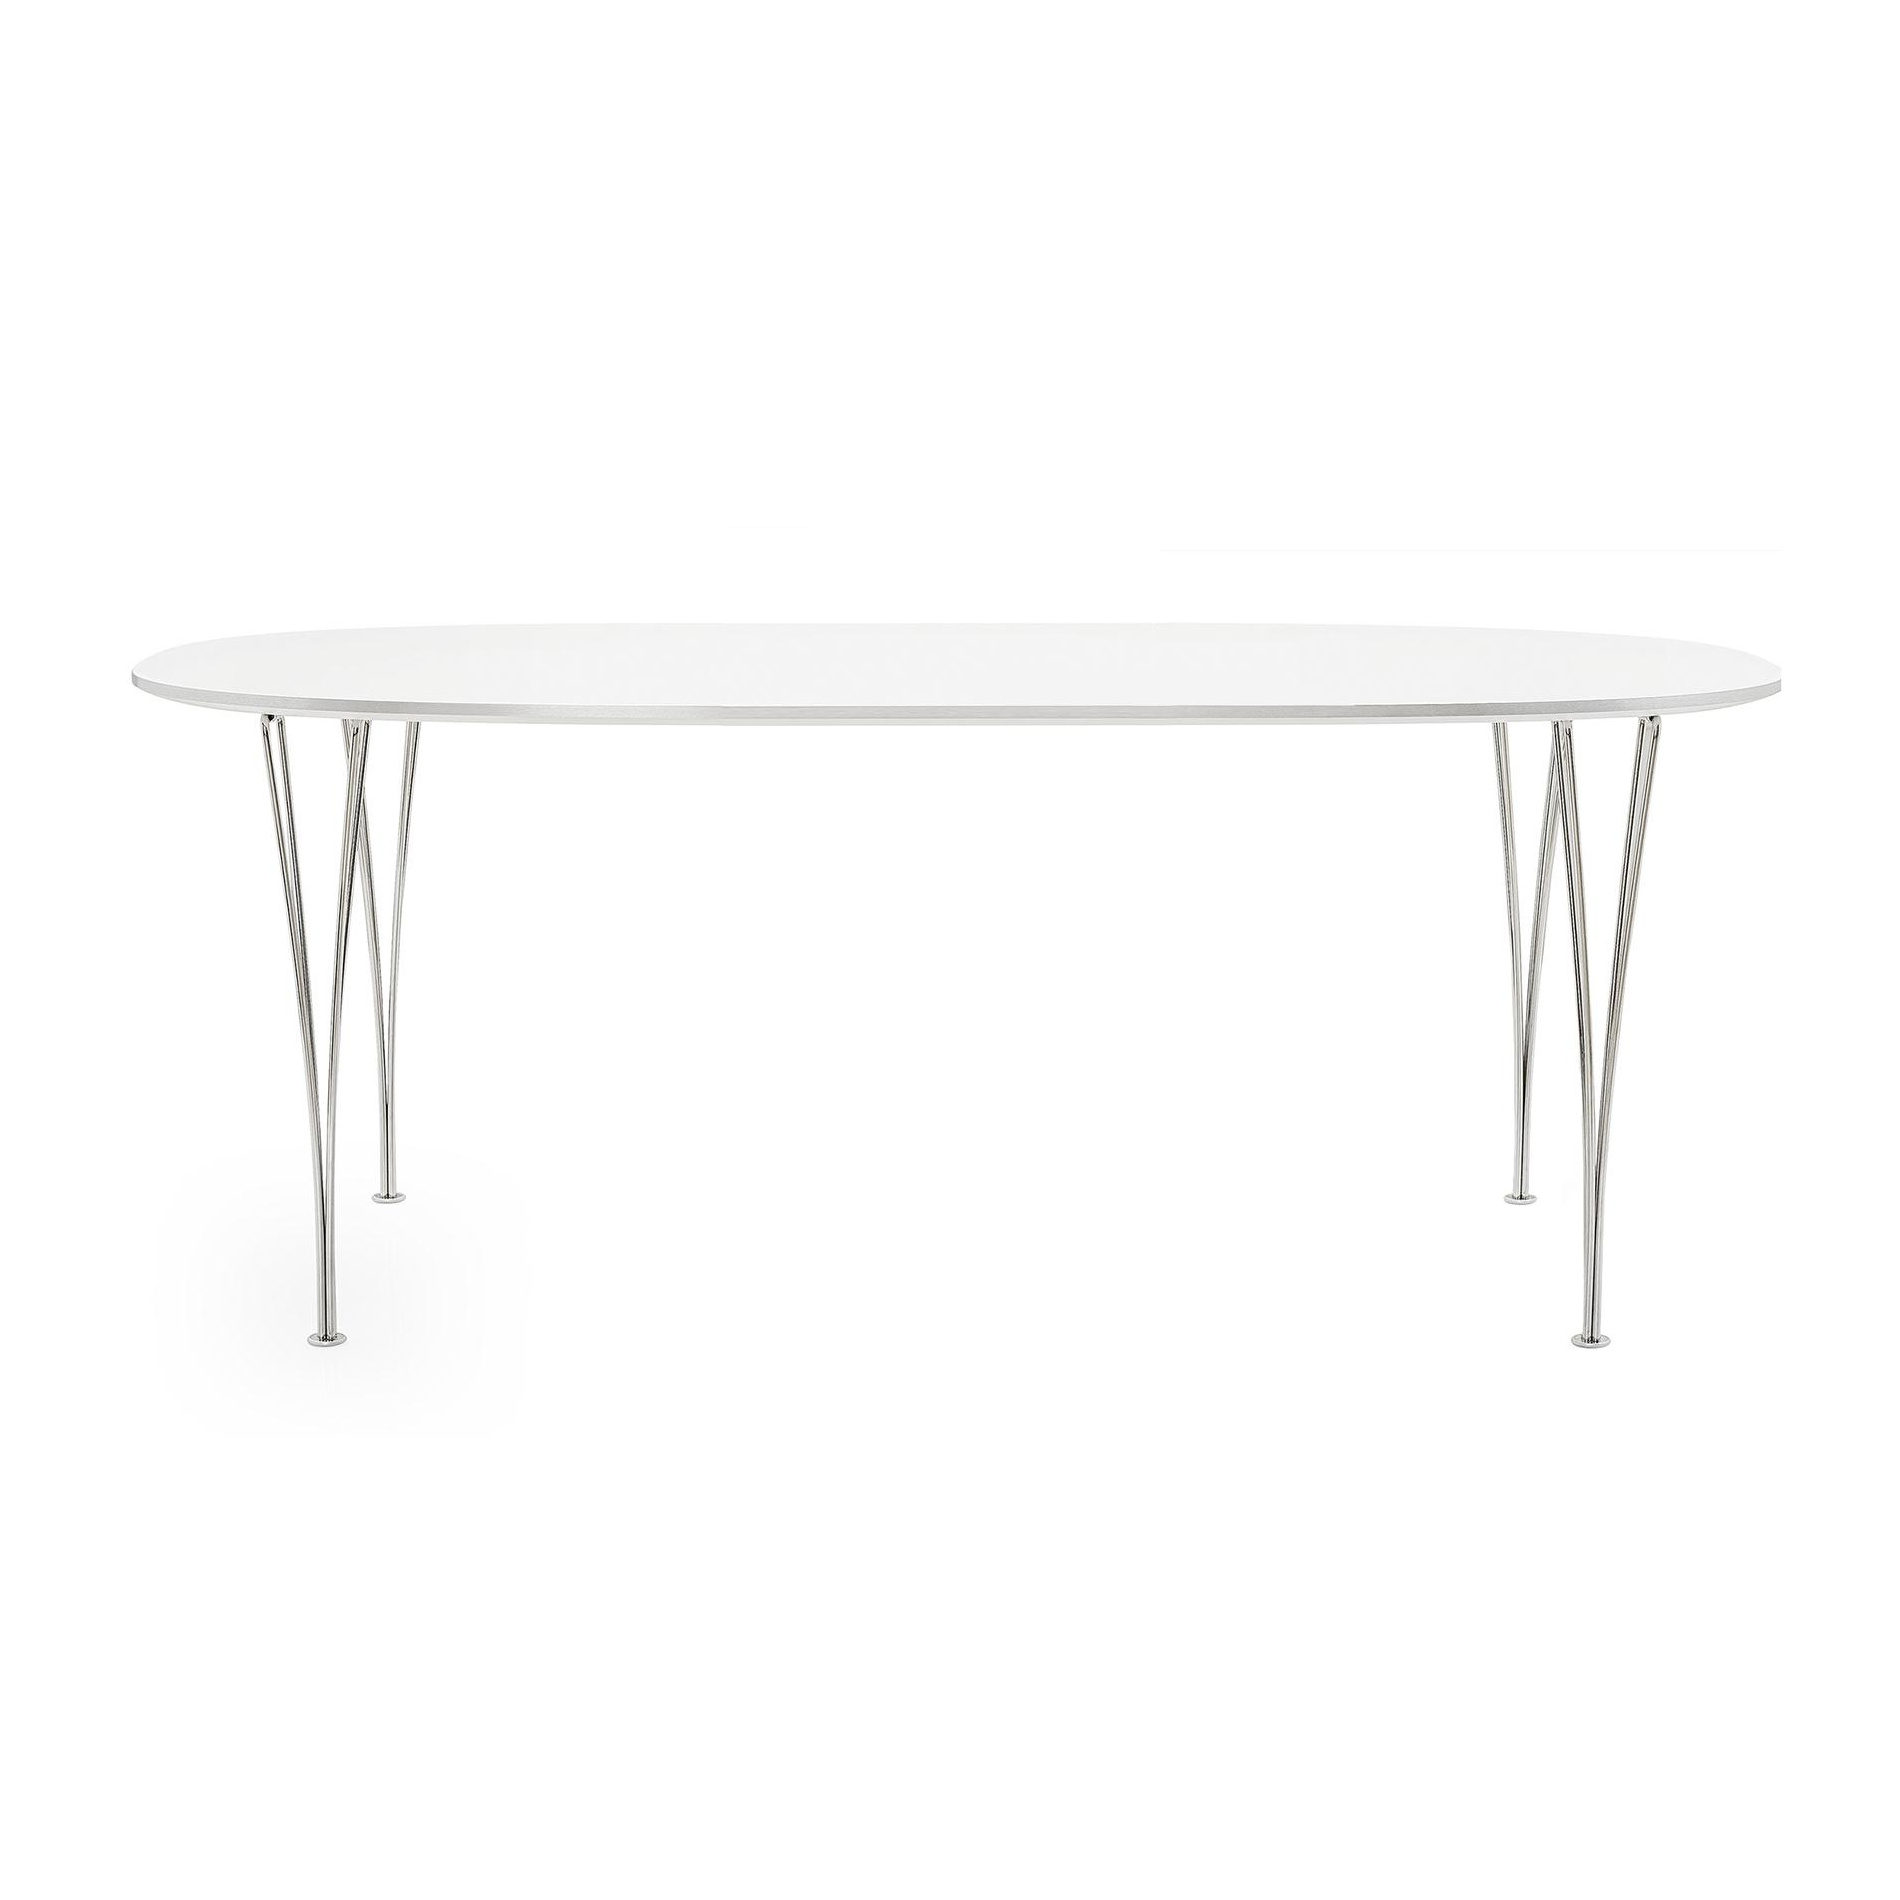 Fritz Hansen - B614 Super-elliptischer Tisch 240x120x72cm - weiß/Laminat mit Aluminiumkante/Gestell Stahl verchromt/LxBxH 240x120x72cm von Fritz Hansen